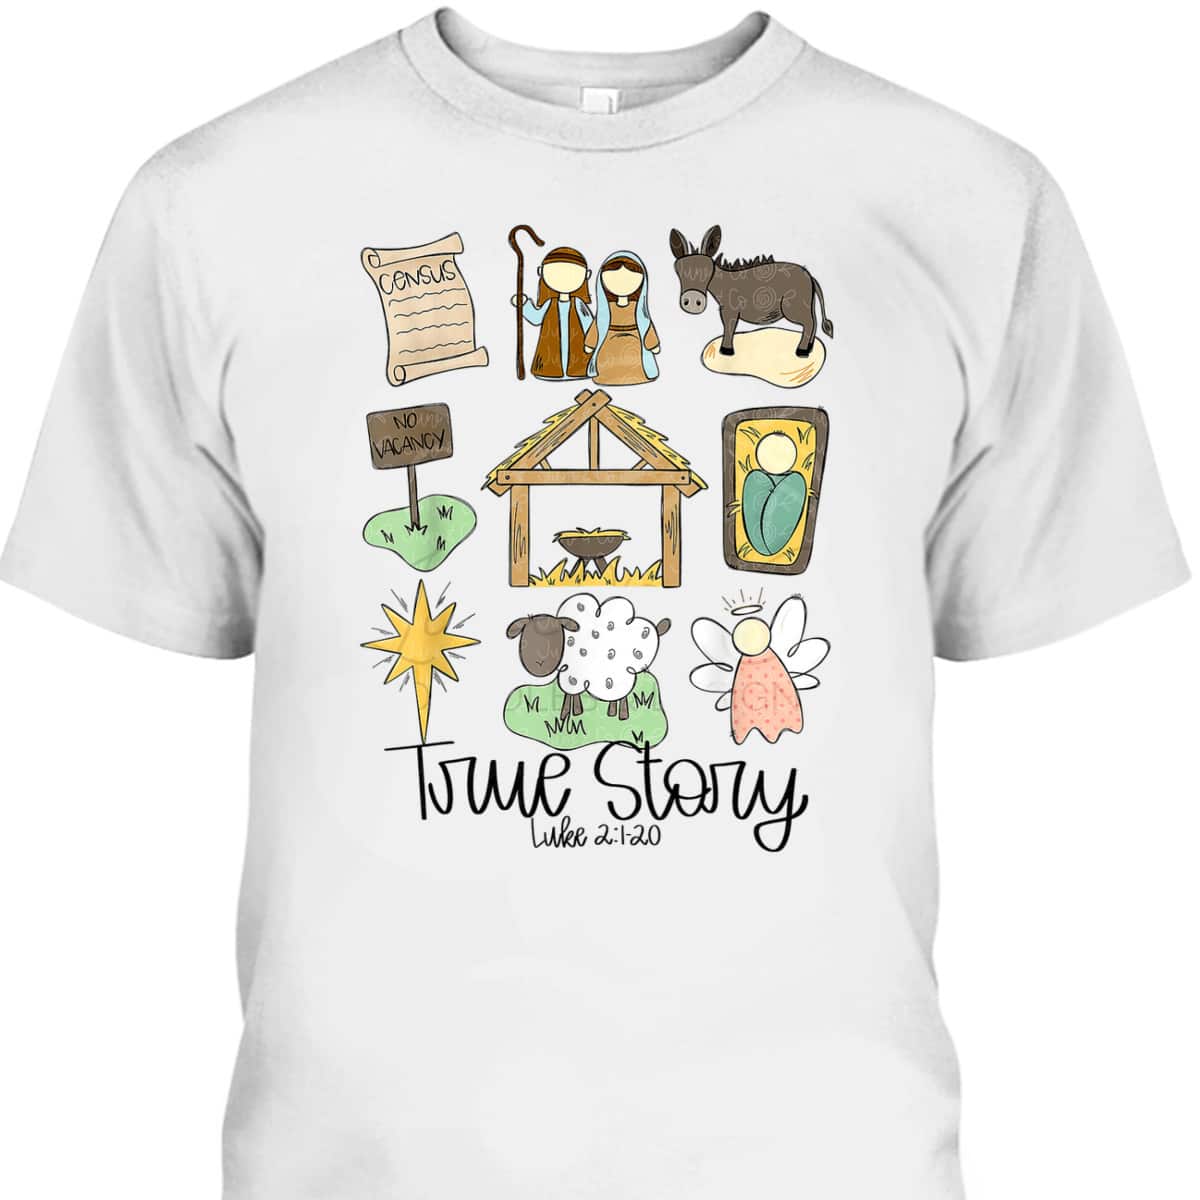 True Story Christmas Luke 21-20 Christian T-Shirt